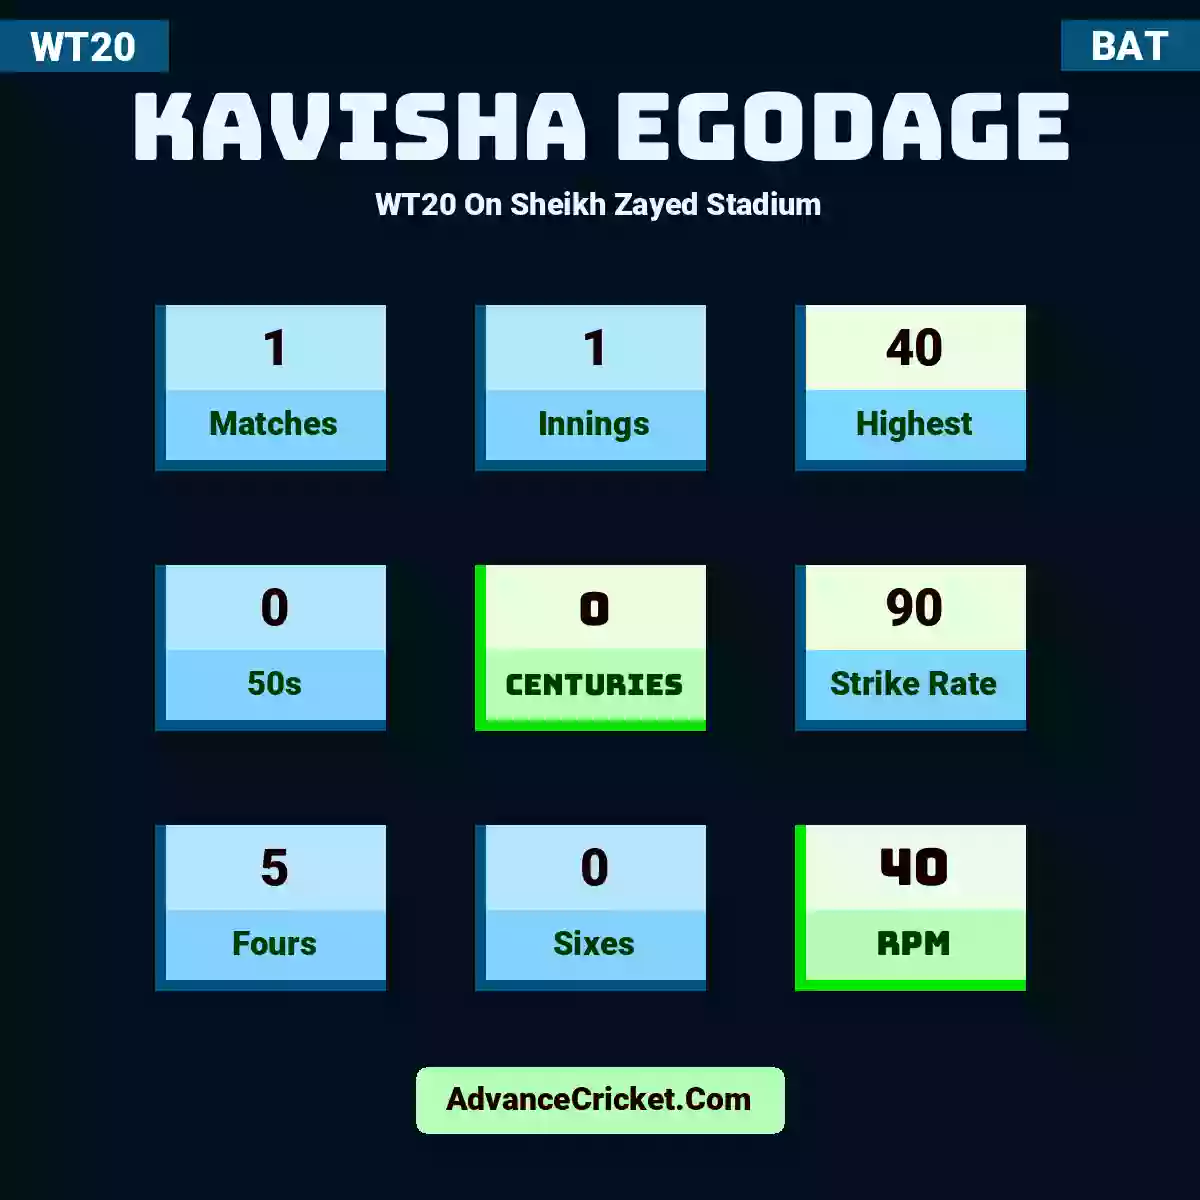 Kavisha Egodage WT20  On Sheikh Zayed Stadium, Kavisha Egodage played 1 matches, scored 40 runs as highest, 0 half-centuries, and 0 centuries, with a strike rate of 90. K.Egodage hit 5 fours and 0 sixes, with an RPM of 40.